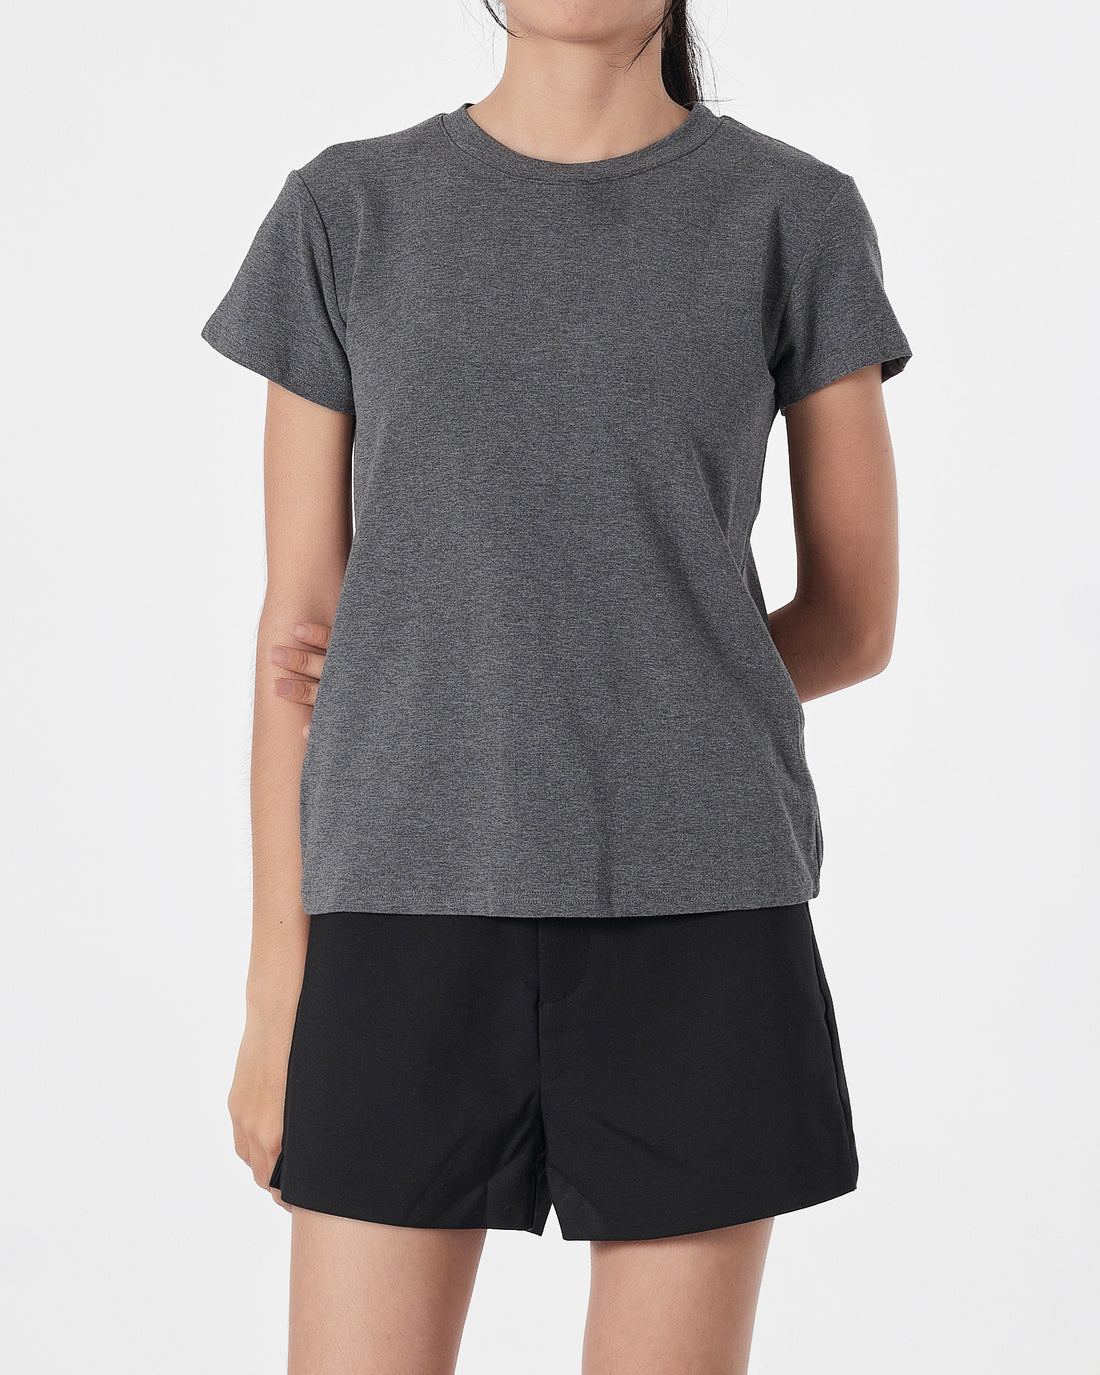 Plain Color Lady Grey T-Shirt 11.90